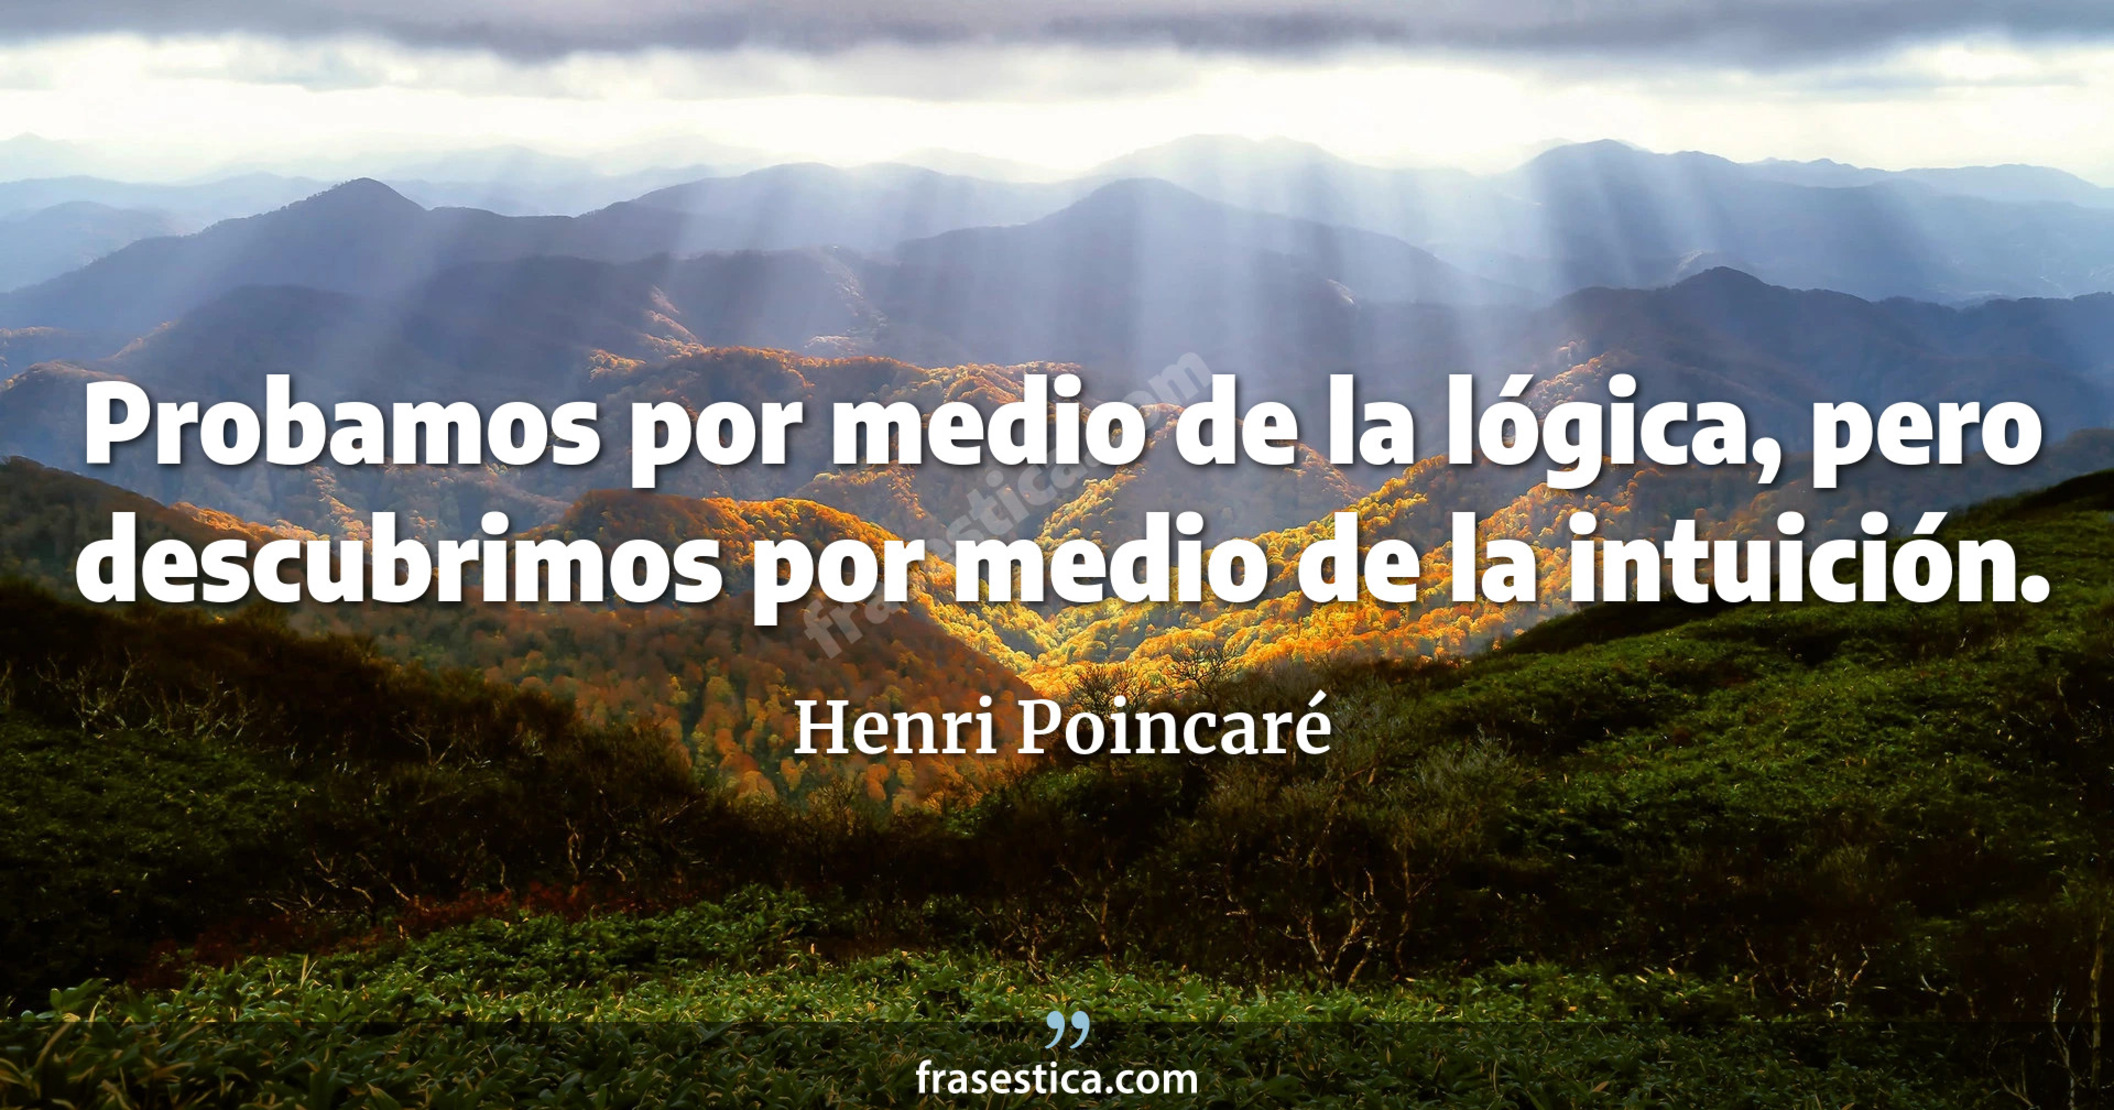 Probamos por medio de la lógica, pero descubrimos por medio de la intuición. - Henri Poincaré